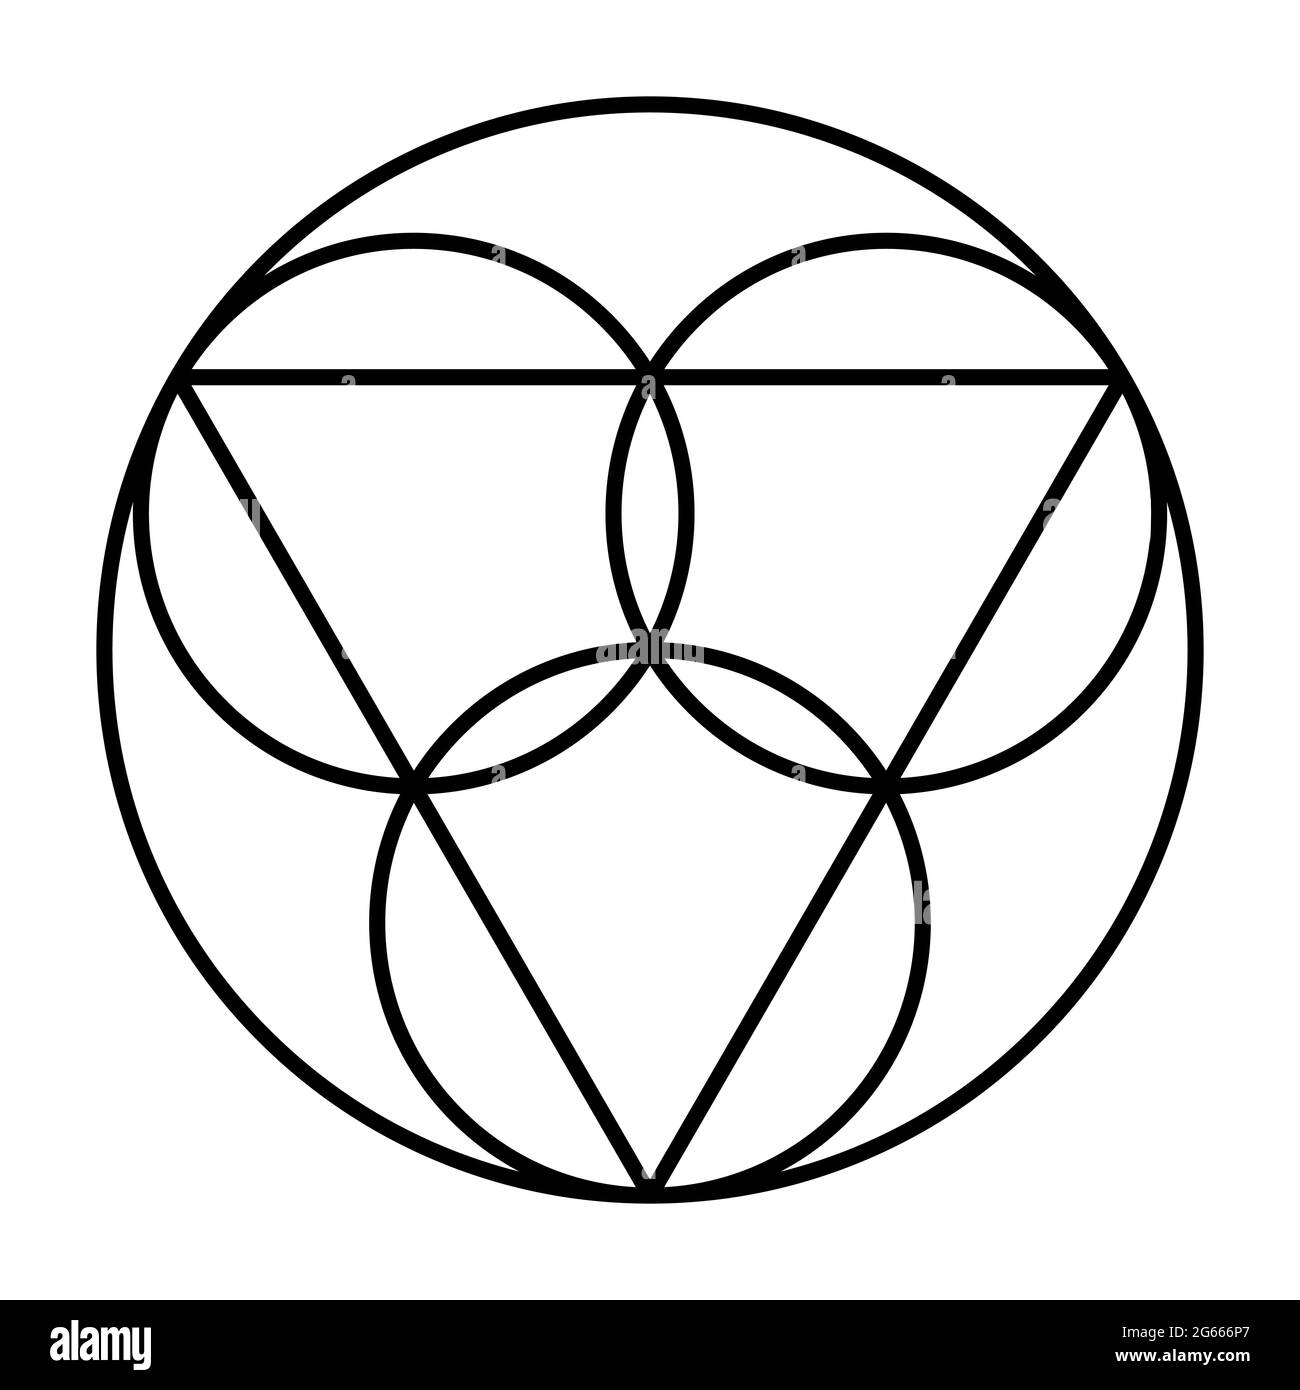 Symbole Trinity. Trois cercles, représentant les personnes coéternelles et consubstantielles Père, le fils Jésus-Christ et le Saint-Esprit. Banque D'Images